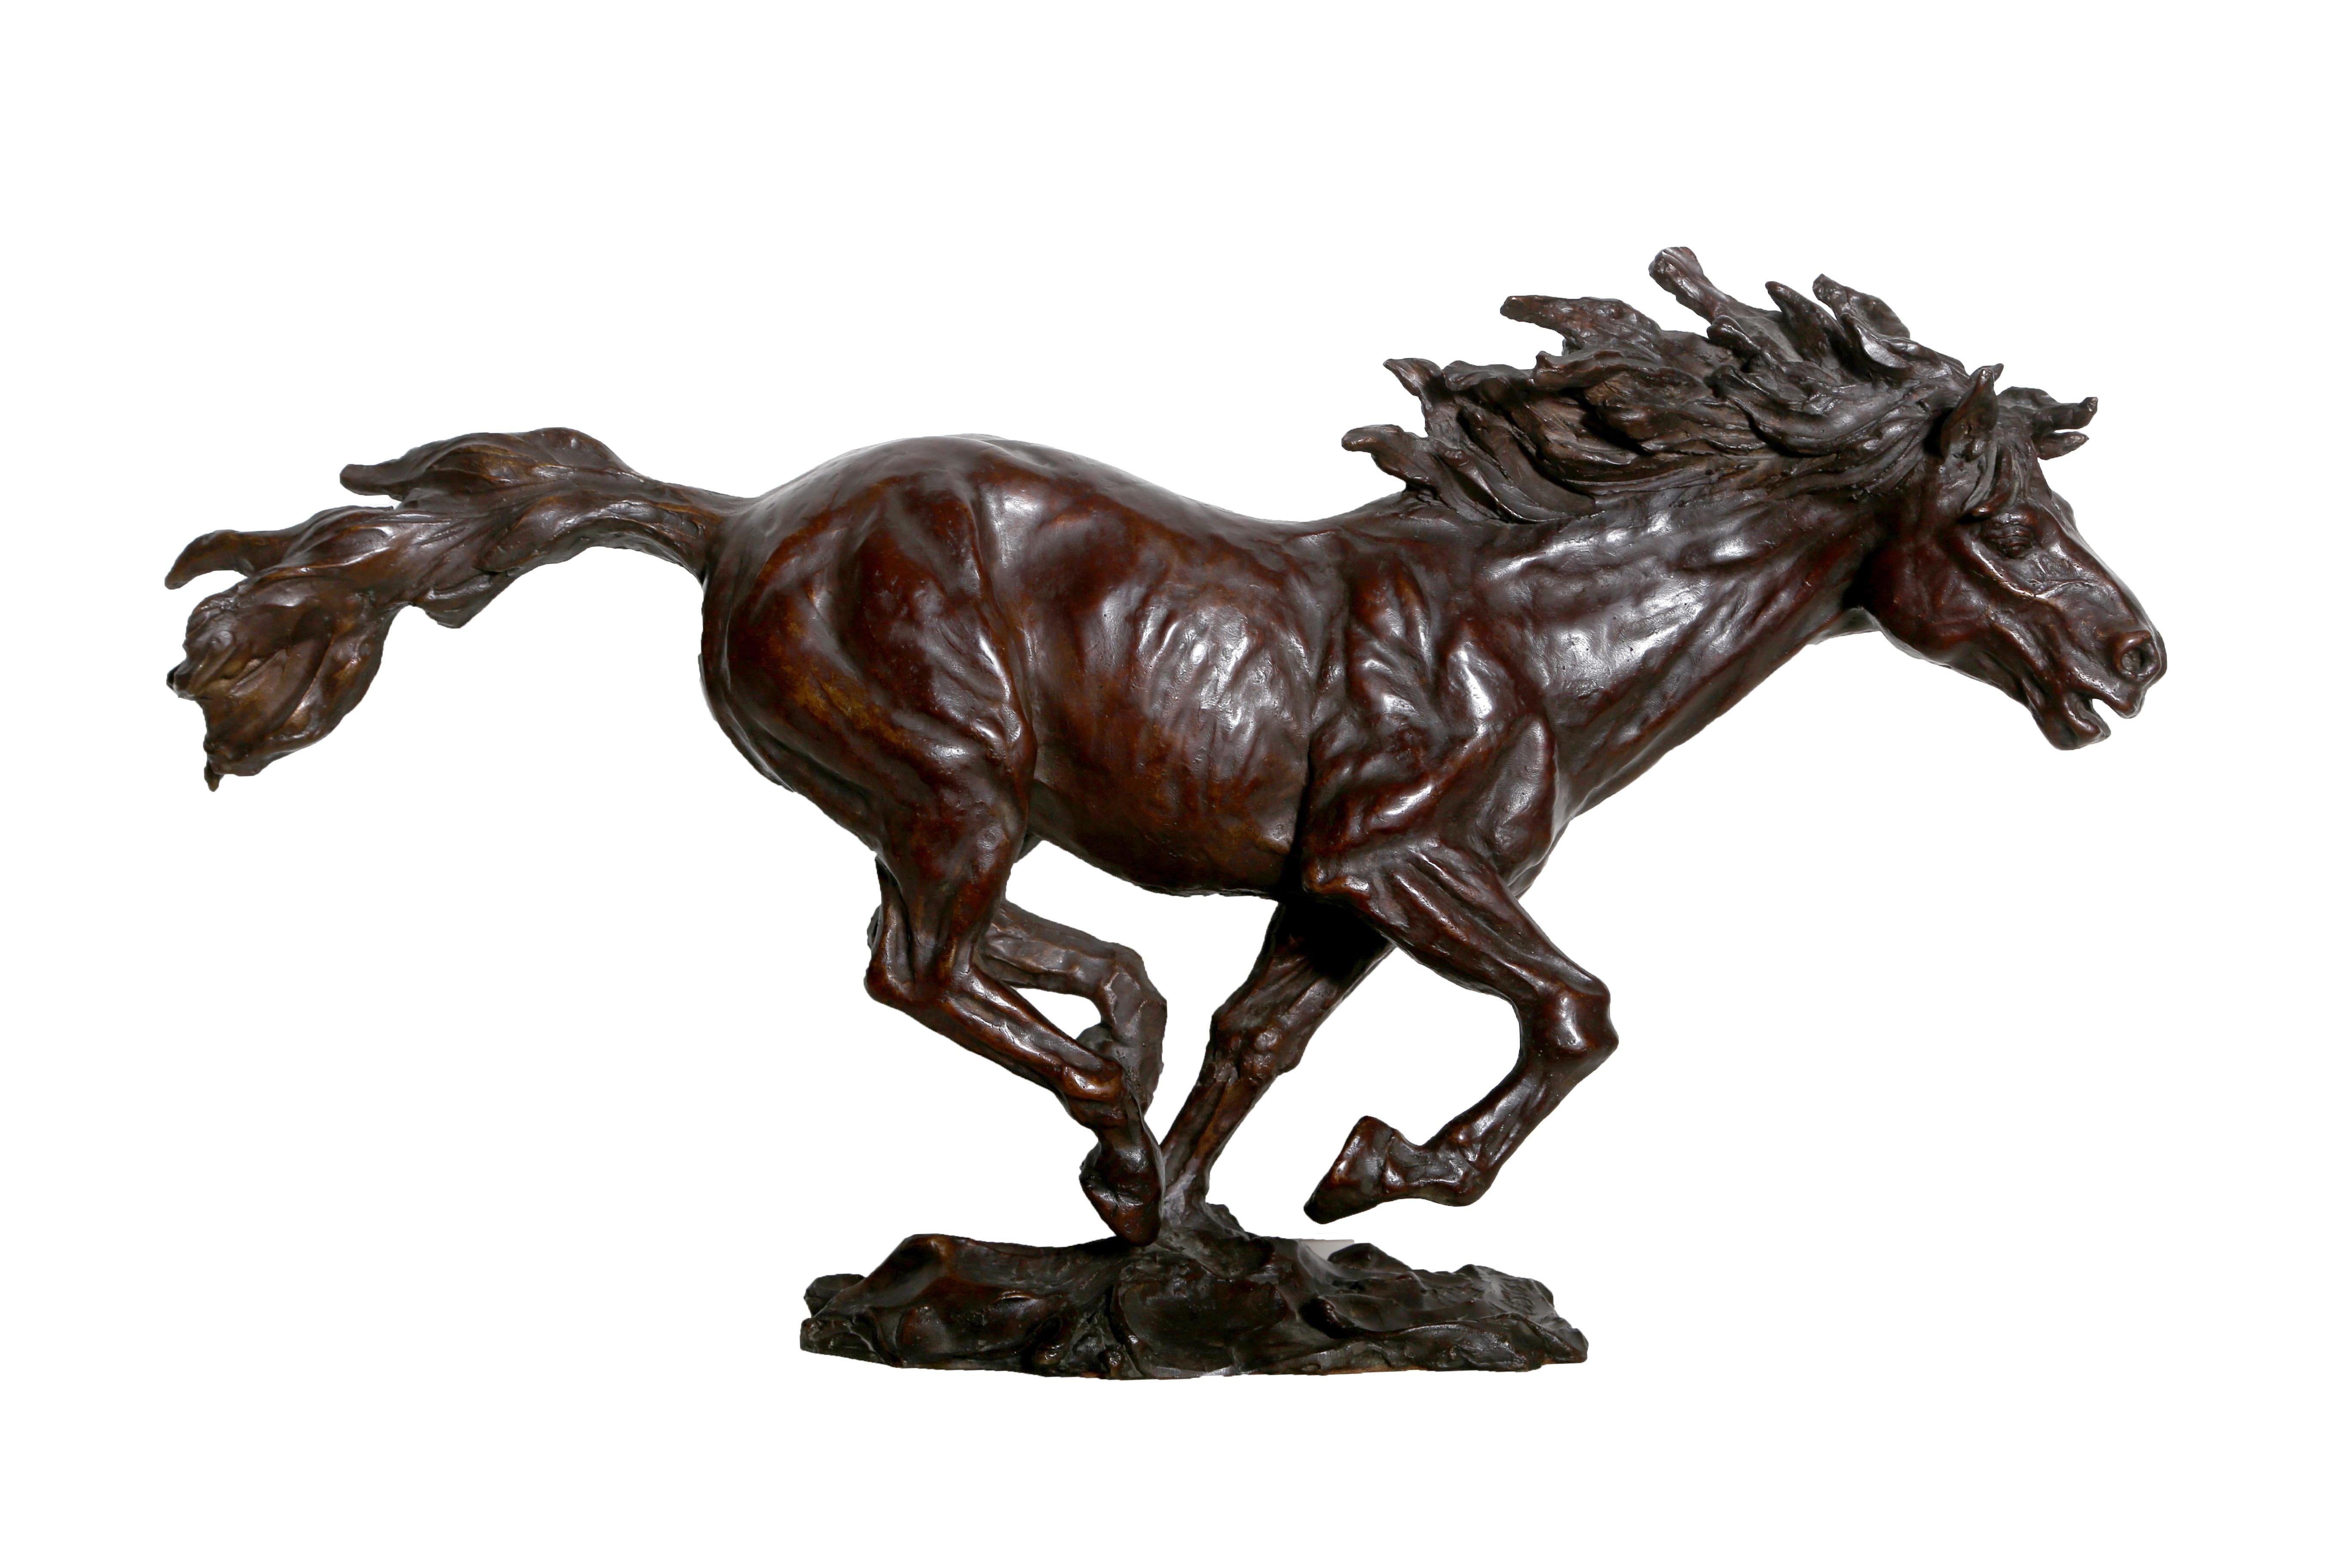 Bronzeskulptur eines wilden Mustang-Pferdes, geschaffen von dem amerikanischen Künstler Arnold Goldstein. Dieses Kunstwerk hat die Signatur und die Nummerierung eingraviert. Nummeriert 3/6.